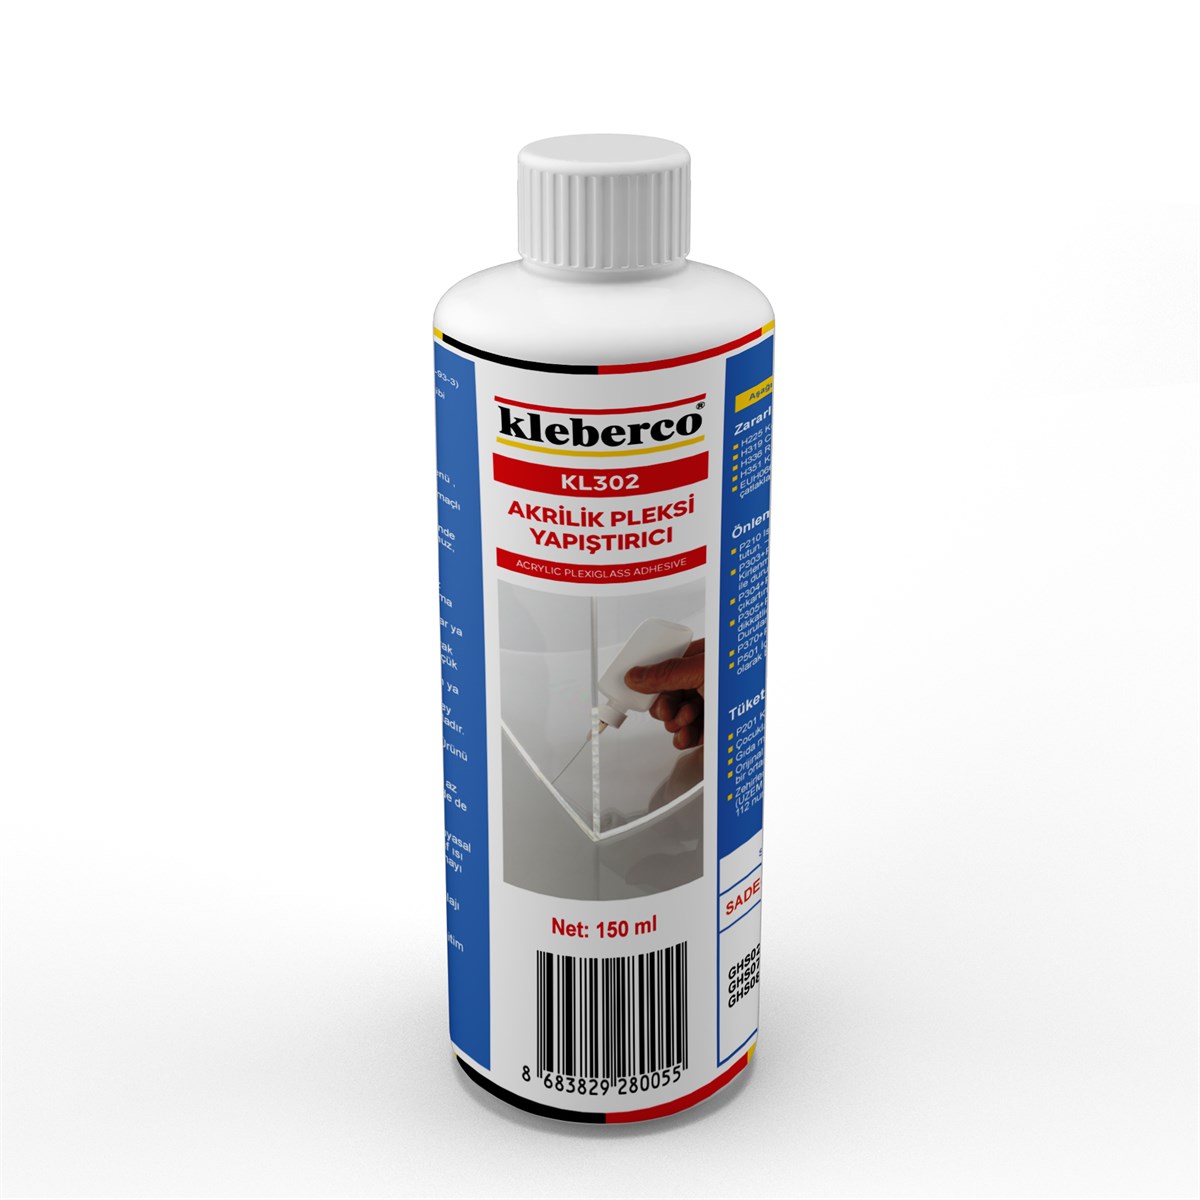 Kleberco KL302 Akrilik/Pleksi Yapıştırıcı, Kloroform İçermez